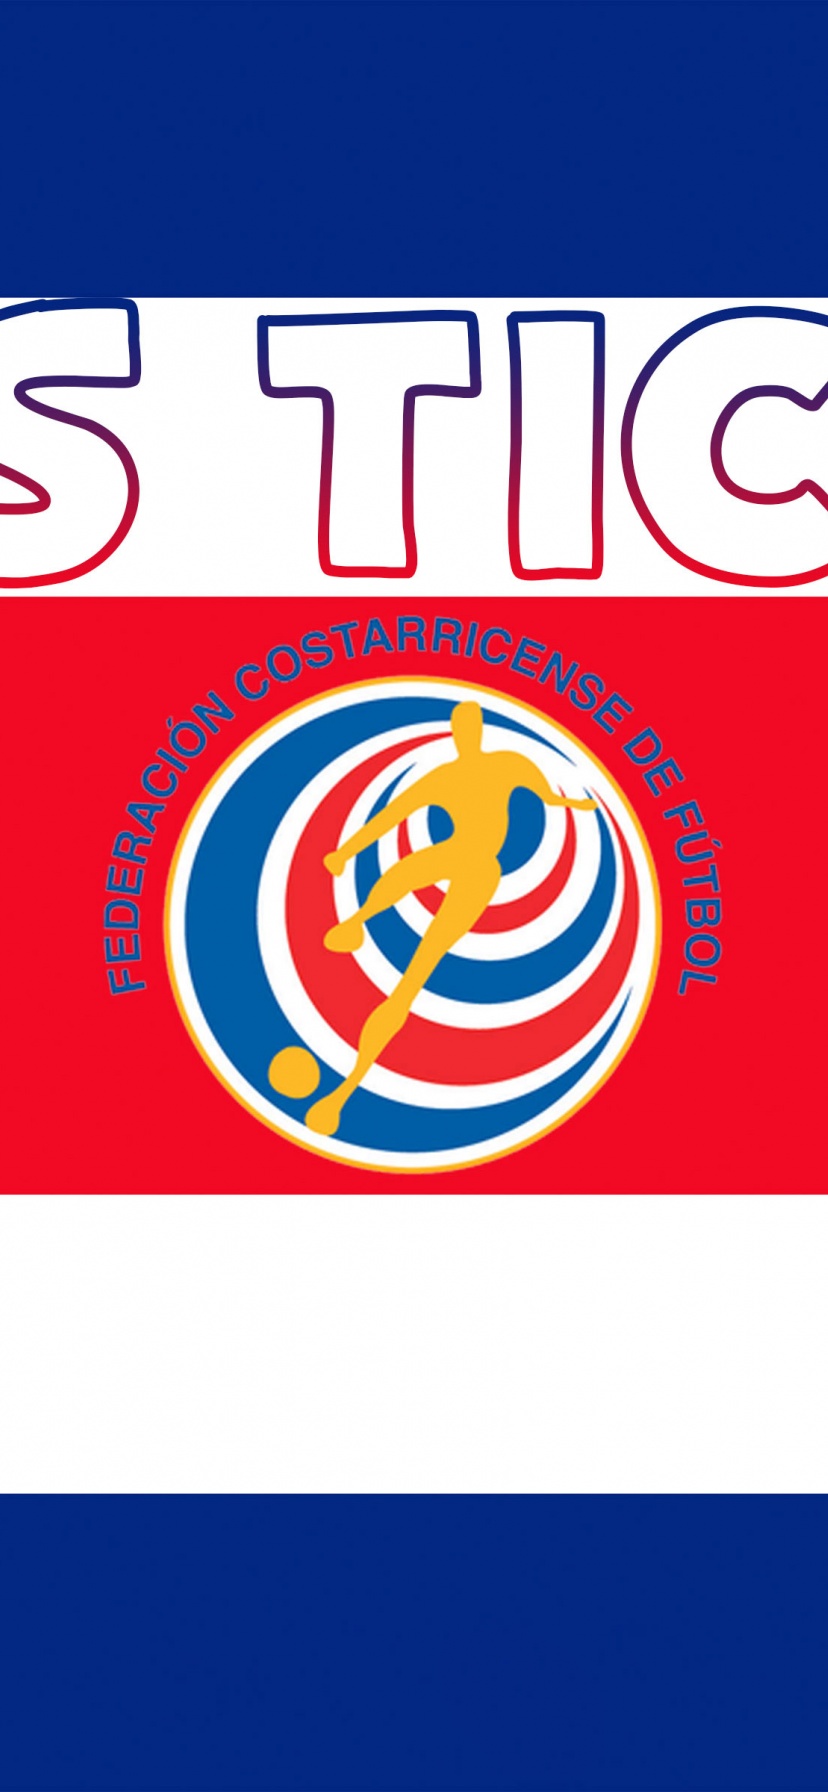 Los Ticos Costa Rica Football Crest